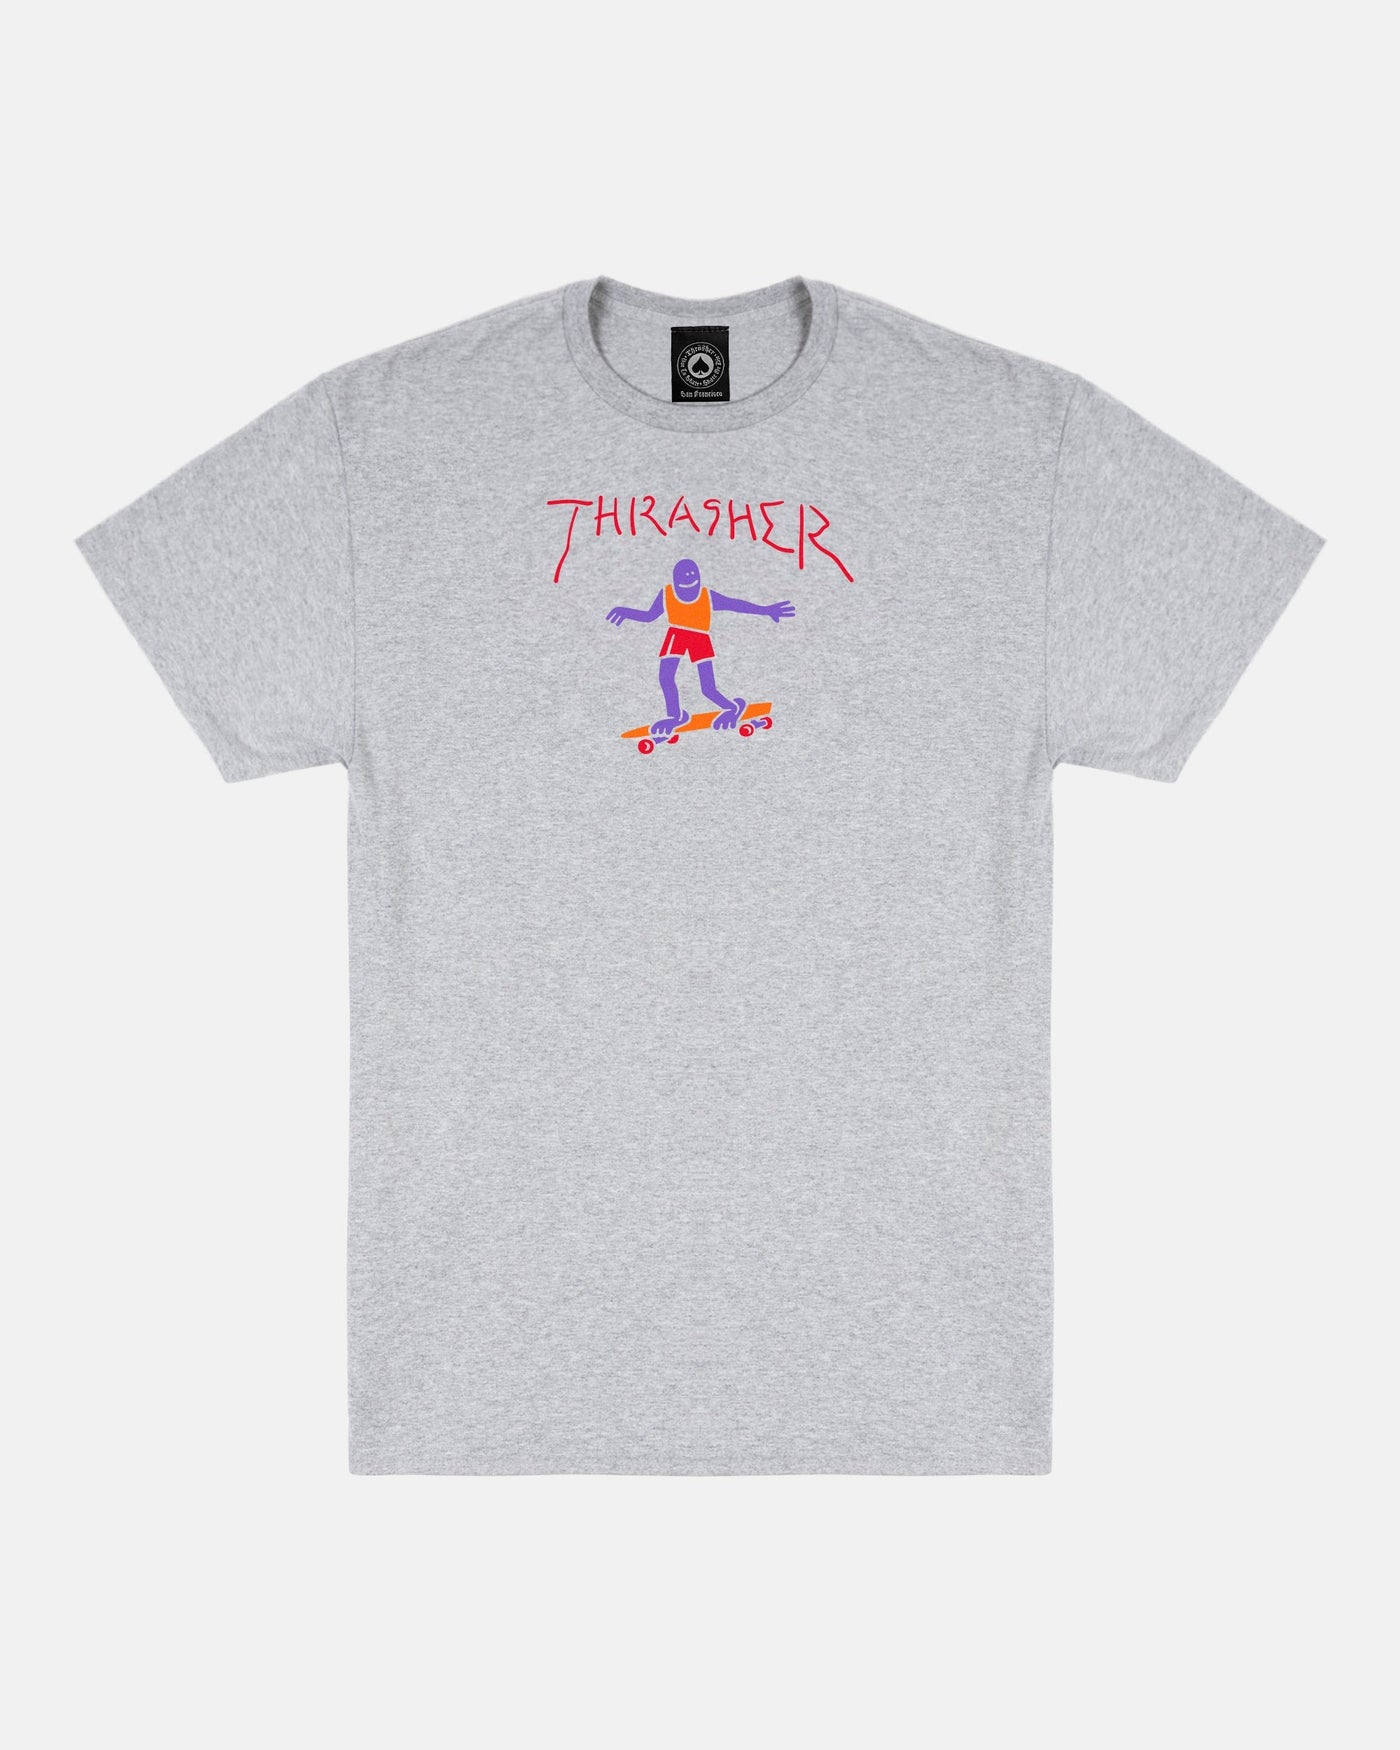 Thrasher - Polera Gonz Fill Ash Grey - Lo Mejor De Thrasher - Solo Por $24990! Compra Ahora En Wallride Skateshop